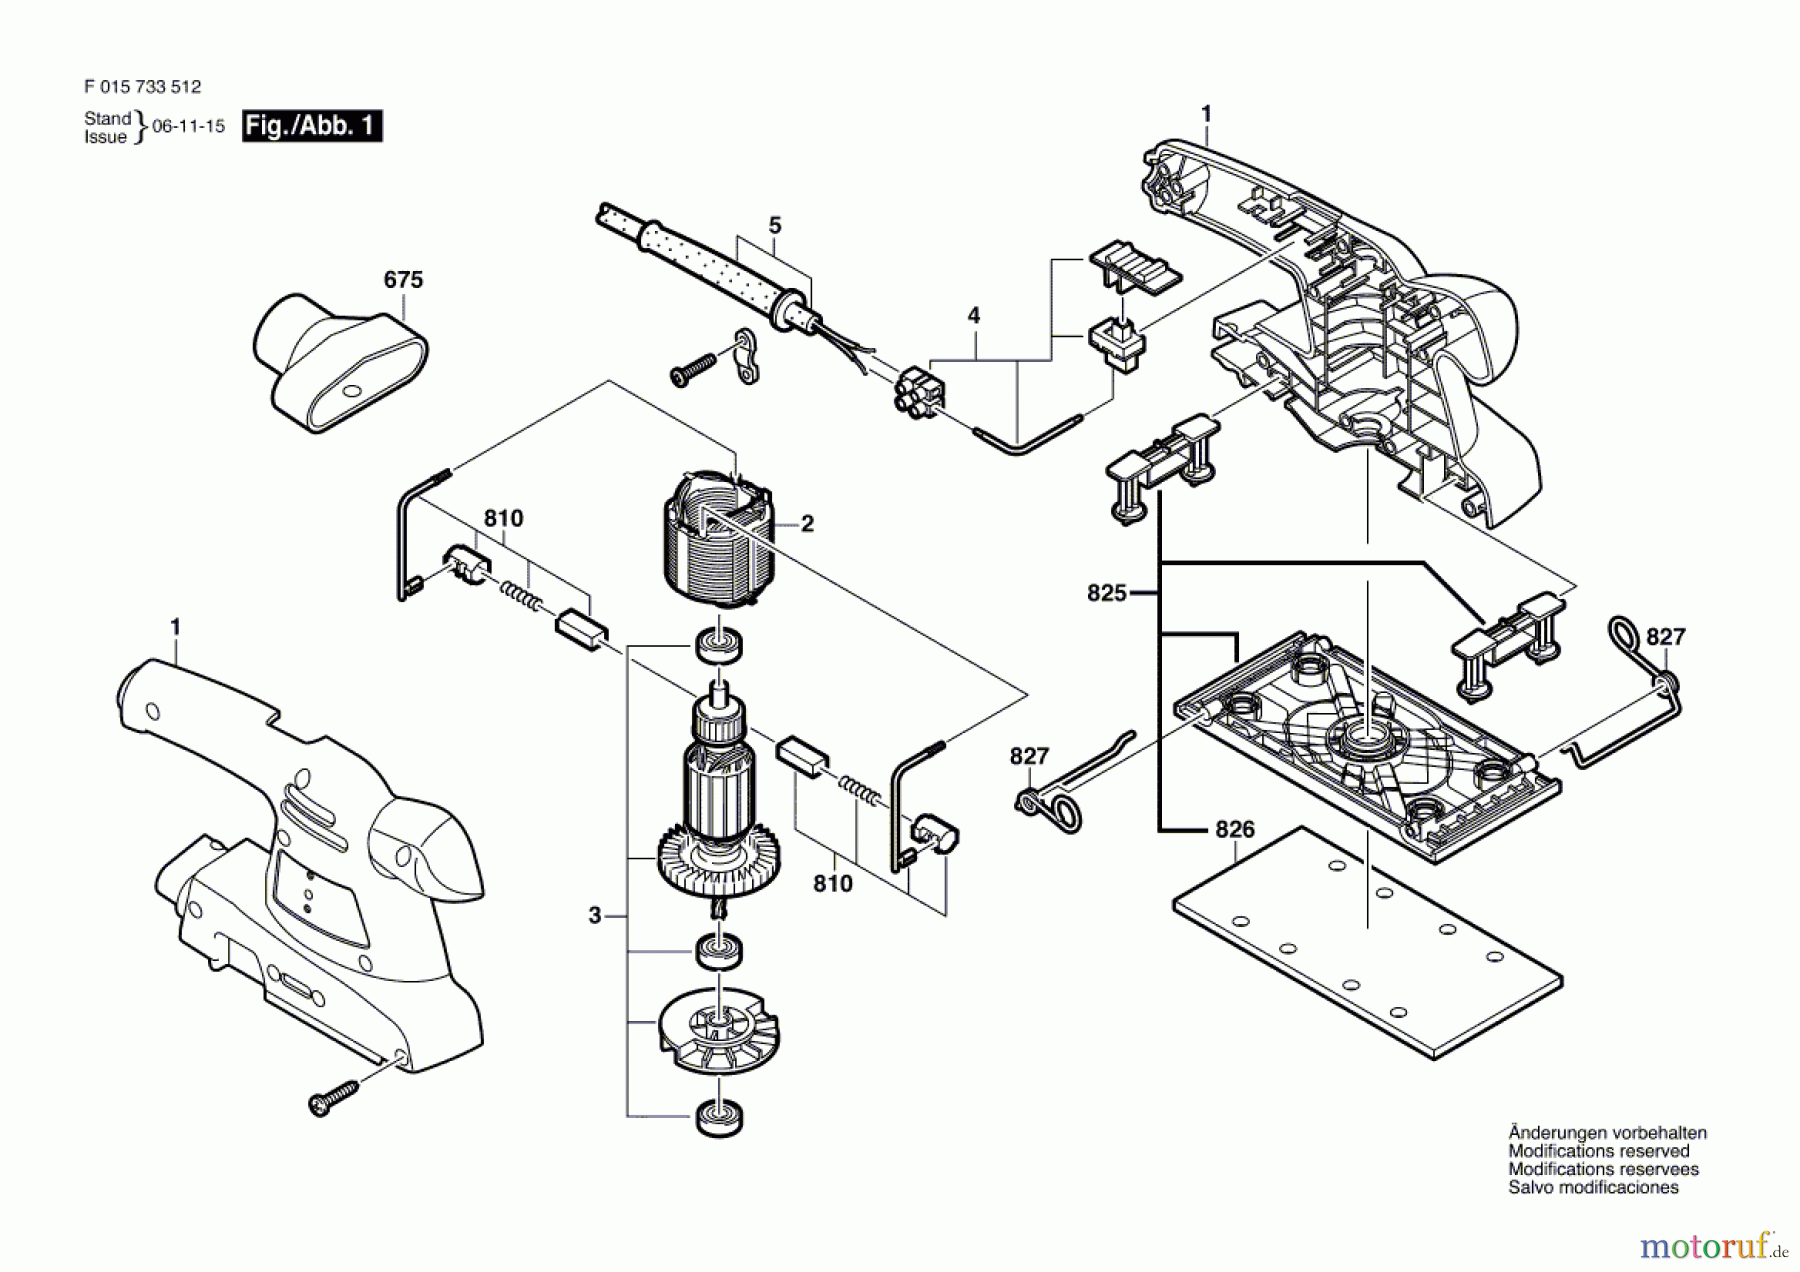  Bosch Werkzeug Schwingschleifer 7335 Seite 1